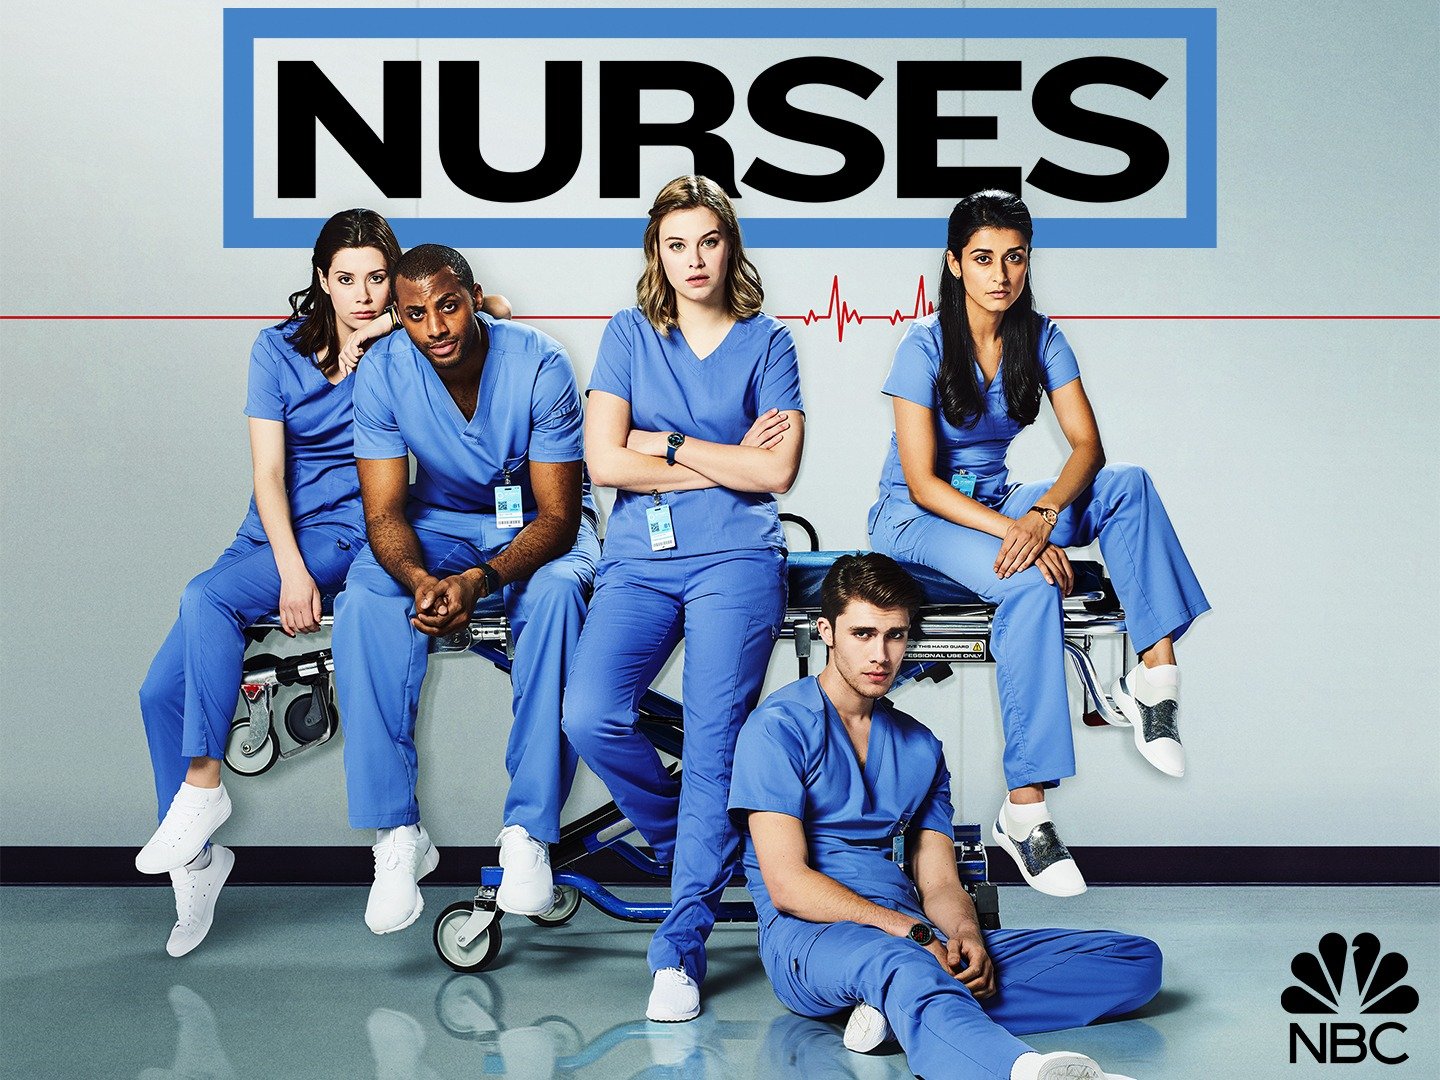 Nurses 2 cast